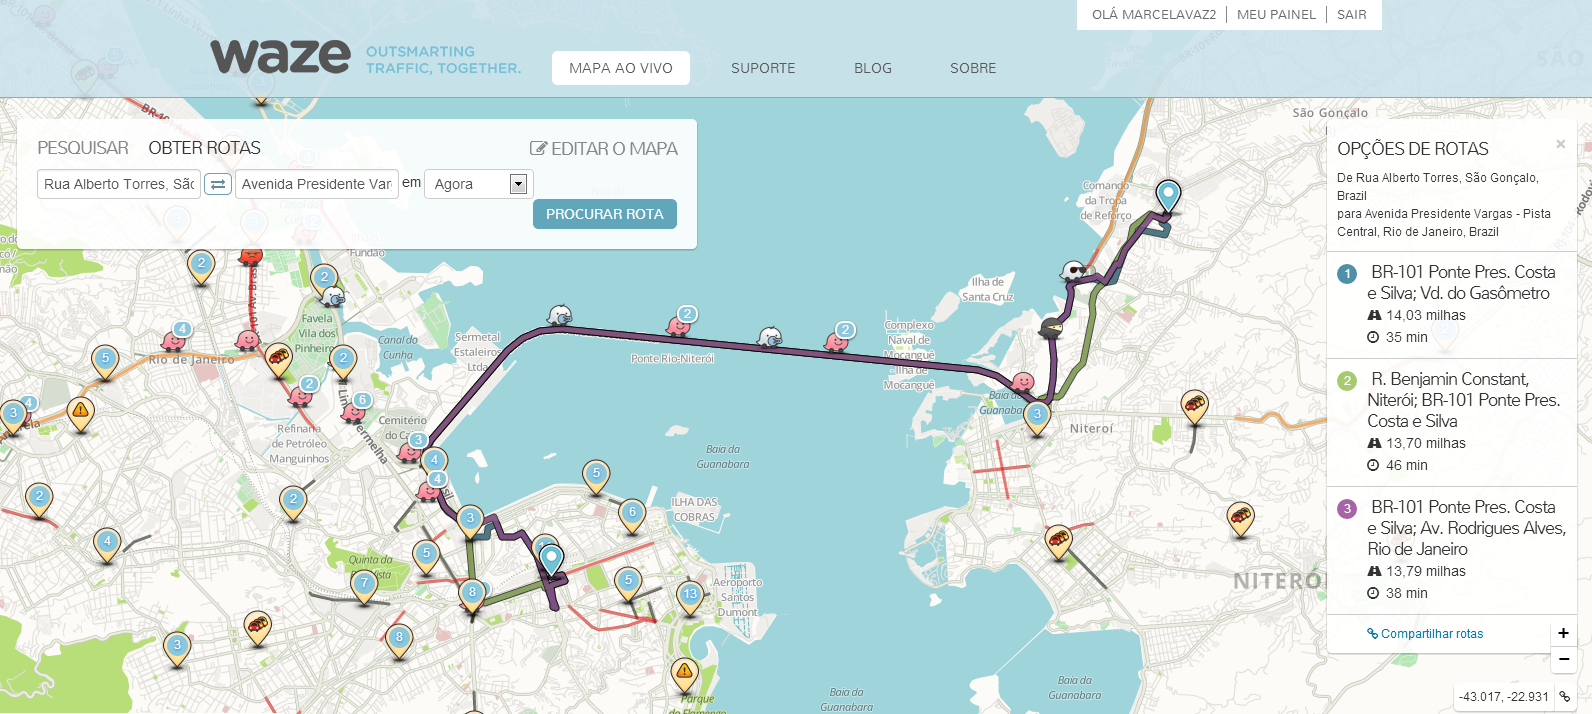 Waze permite traçar rotas e exibe informações dos motoristas que estão no local (Foto: Reprodução/Marcela Vaz)